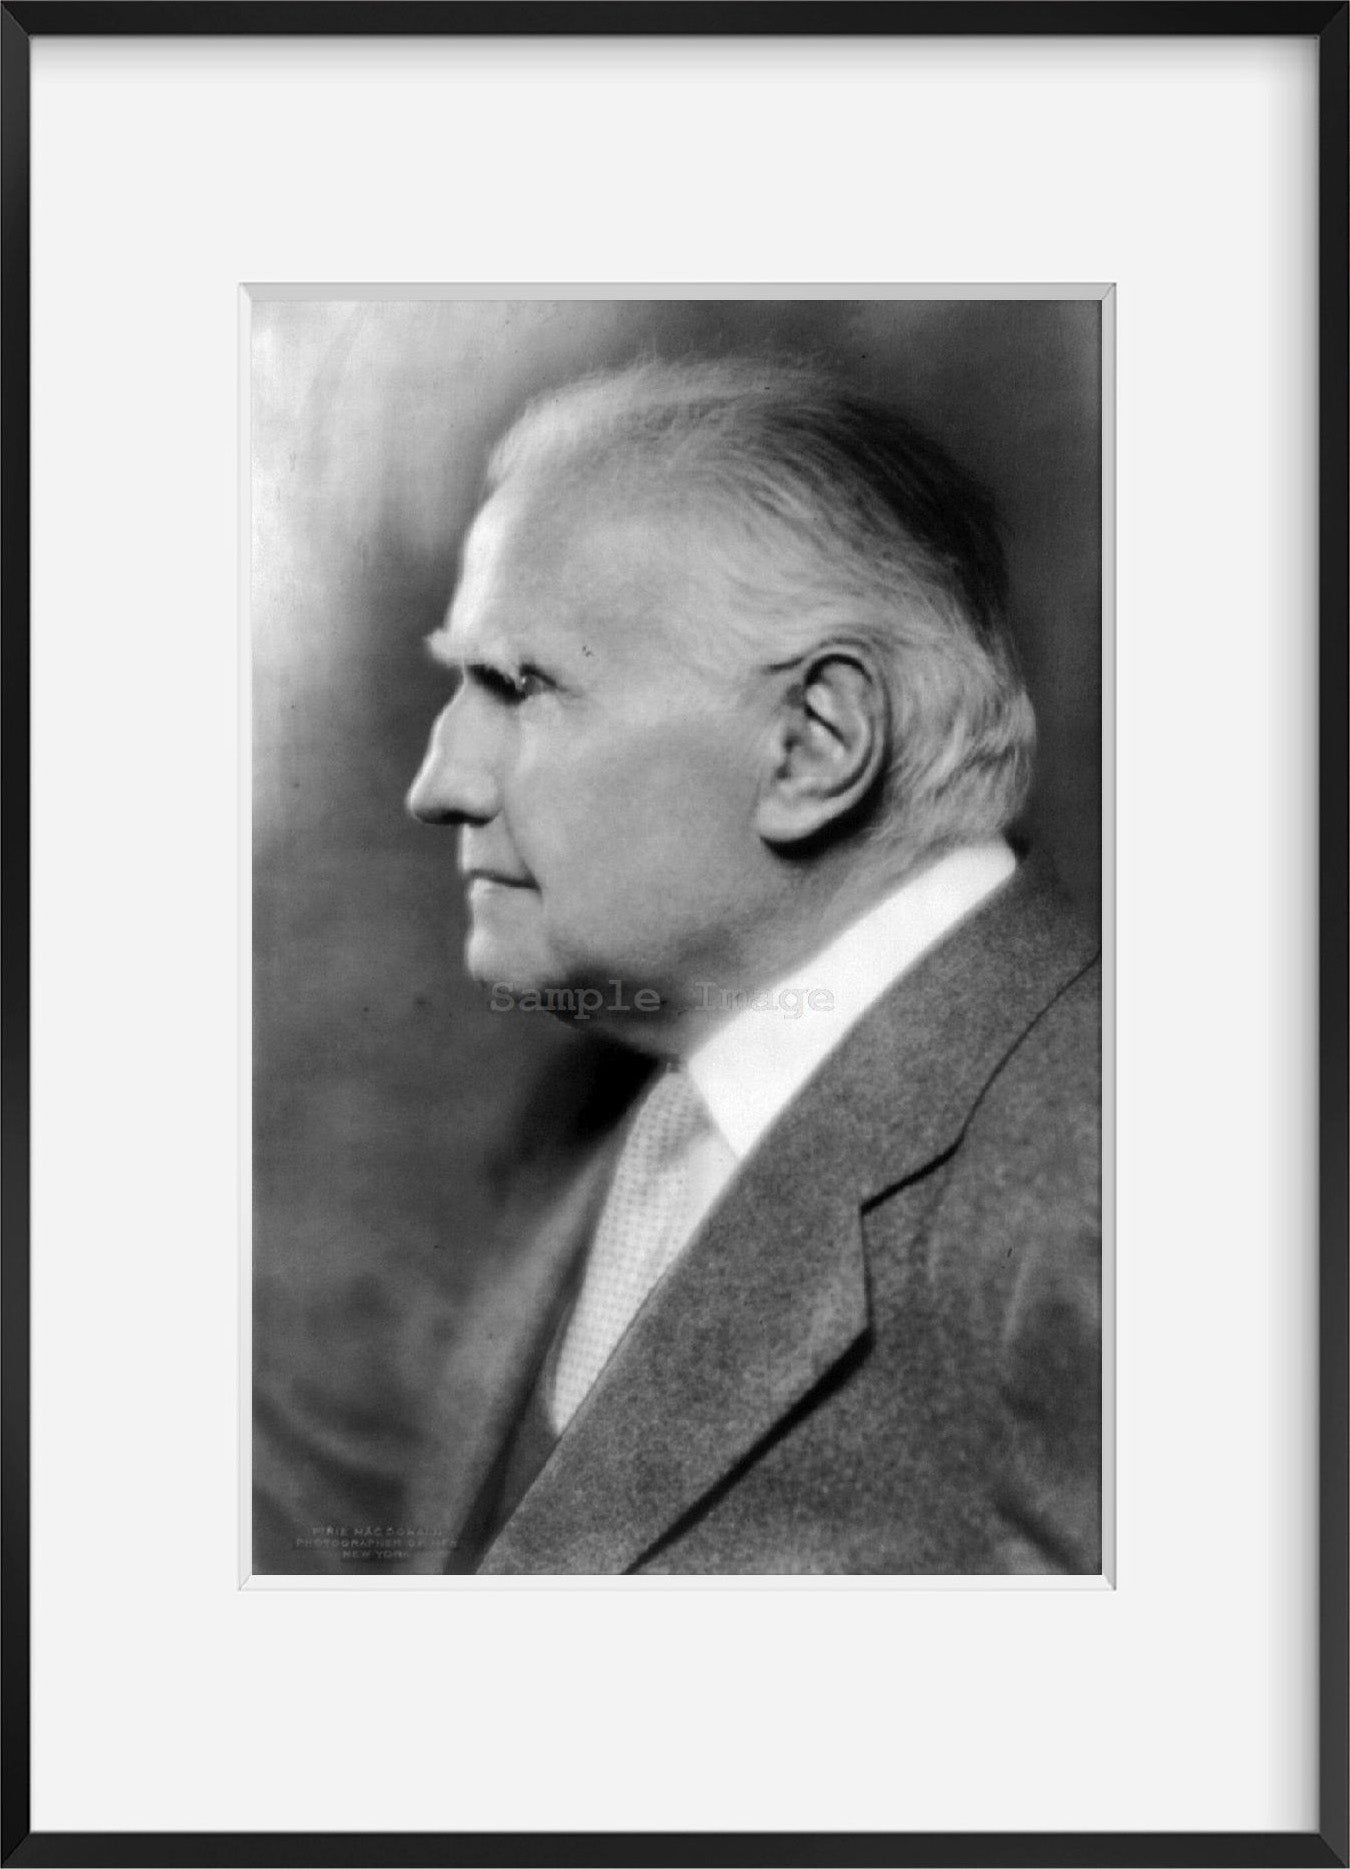 1919 photograph of Walter Damrosch, bust, left profile